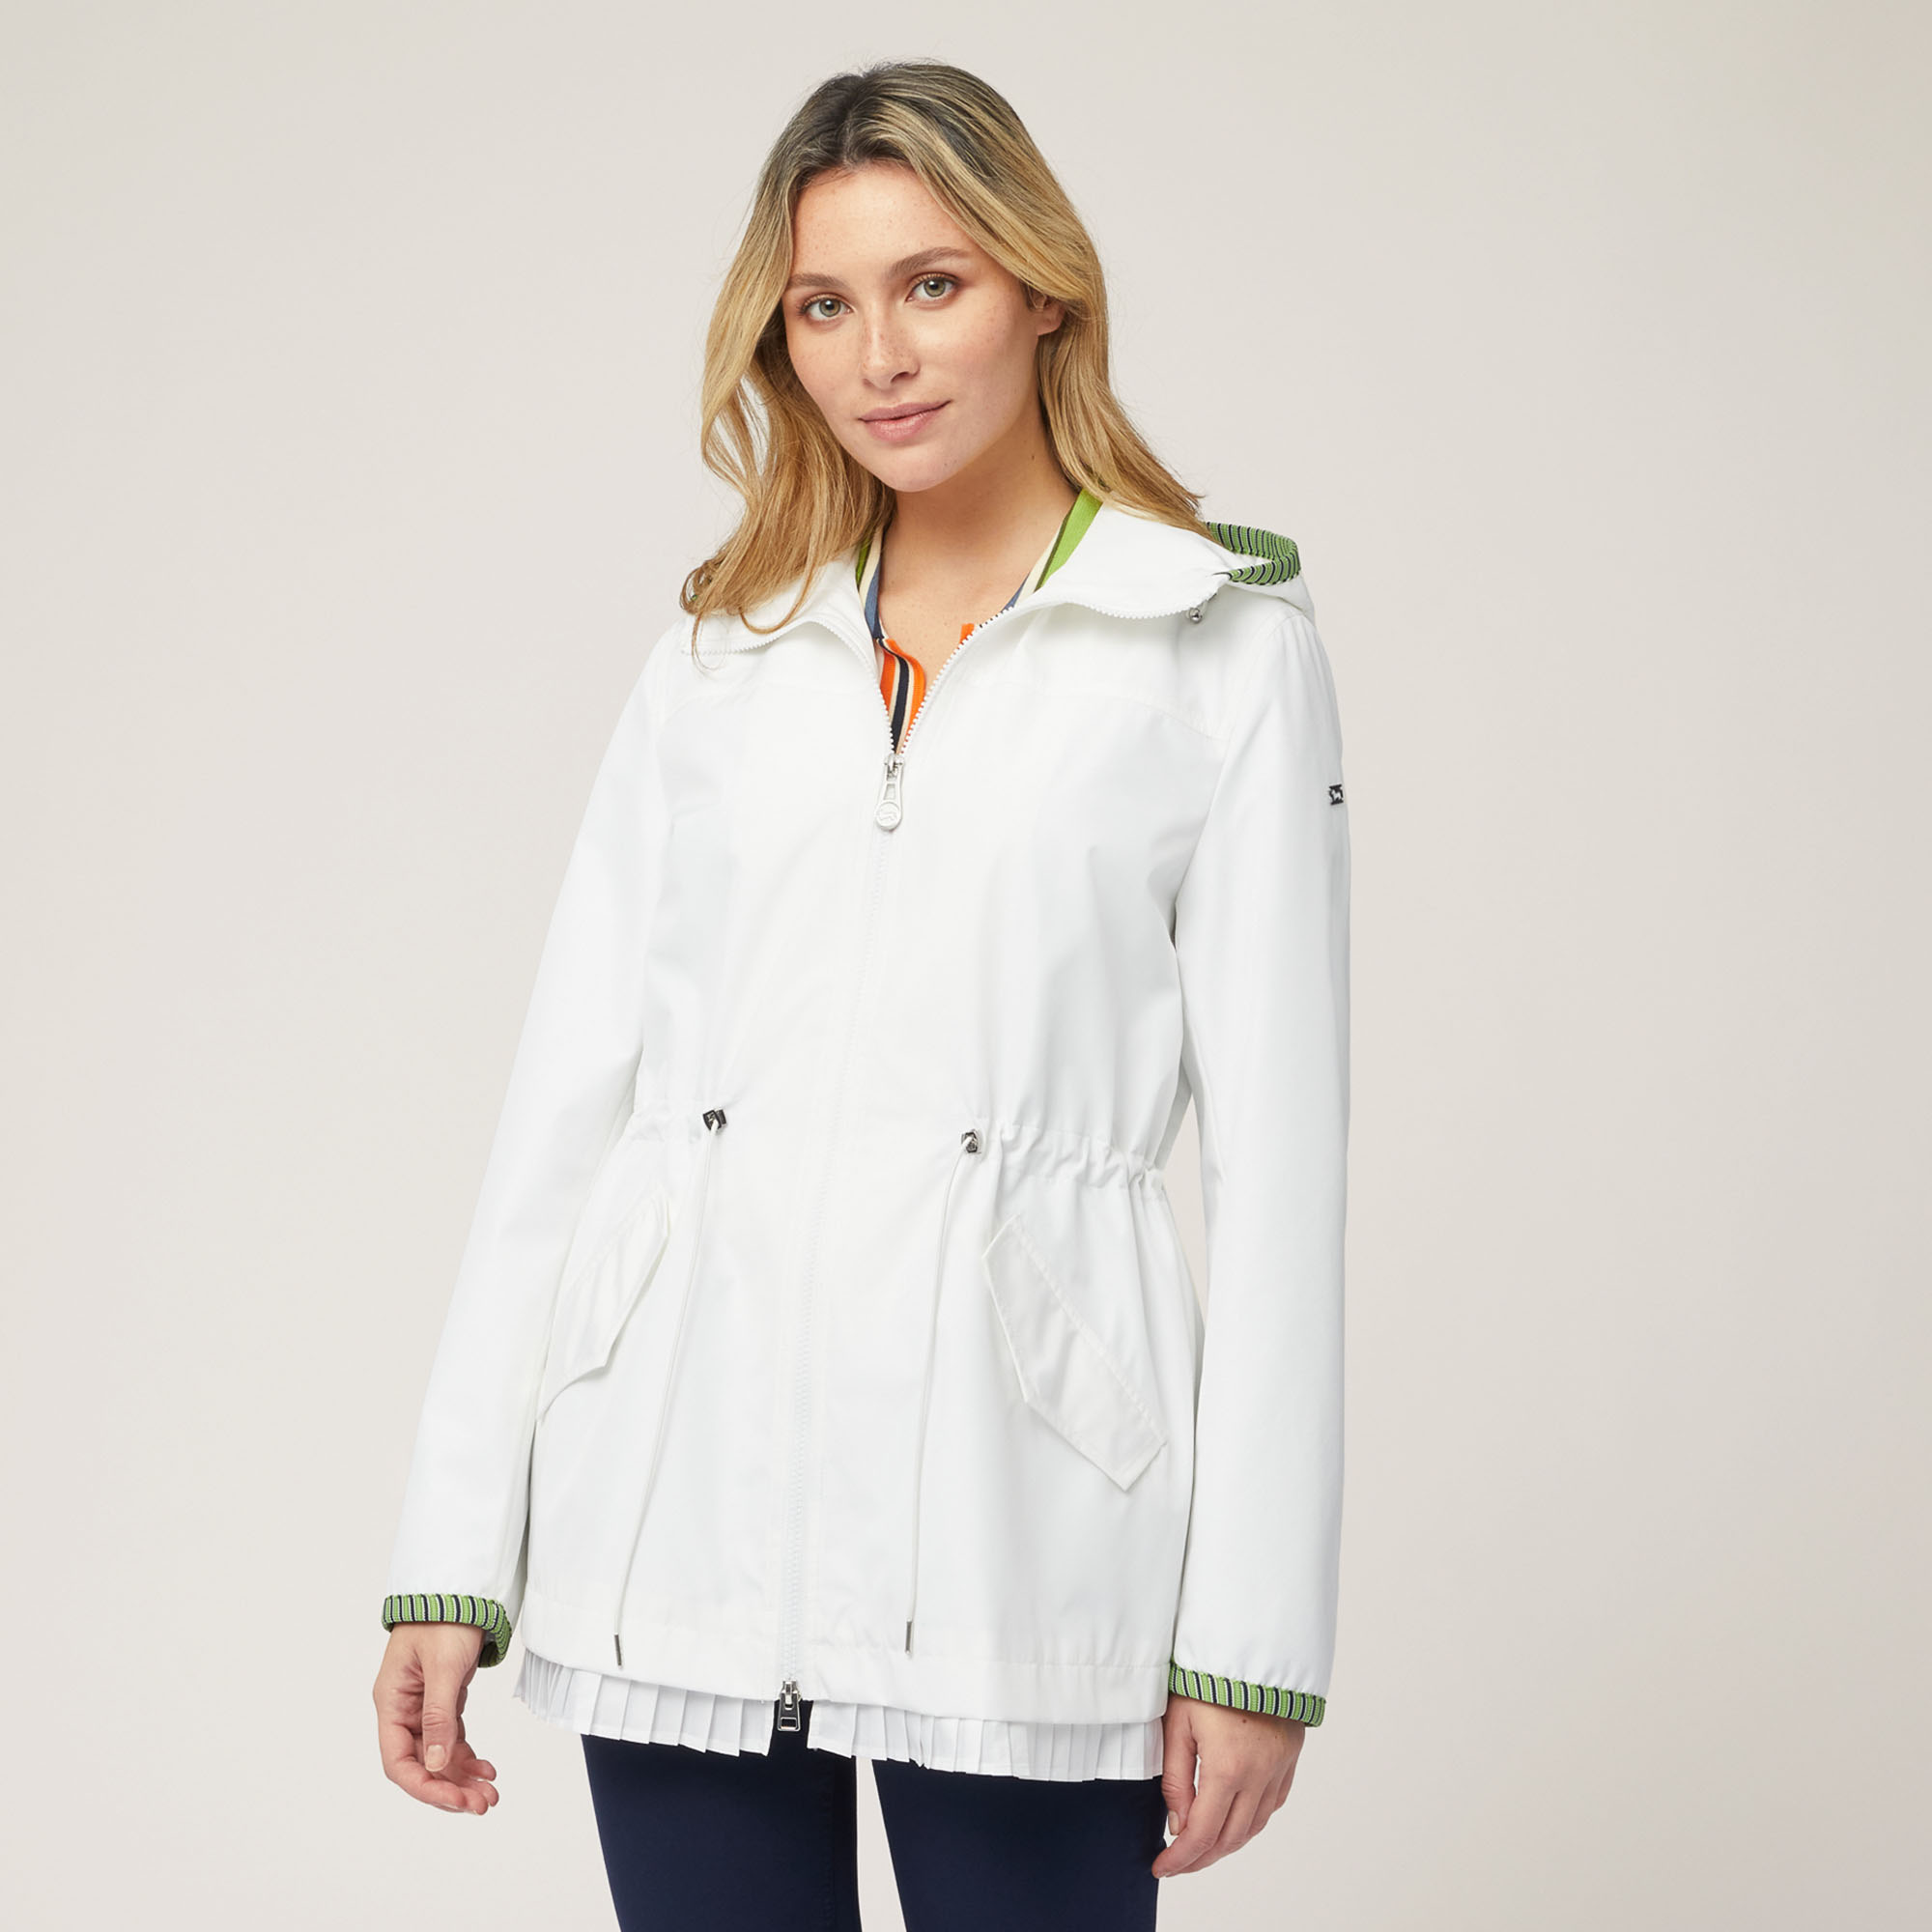 Technical Fabric Pea Coat, White, large